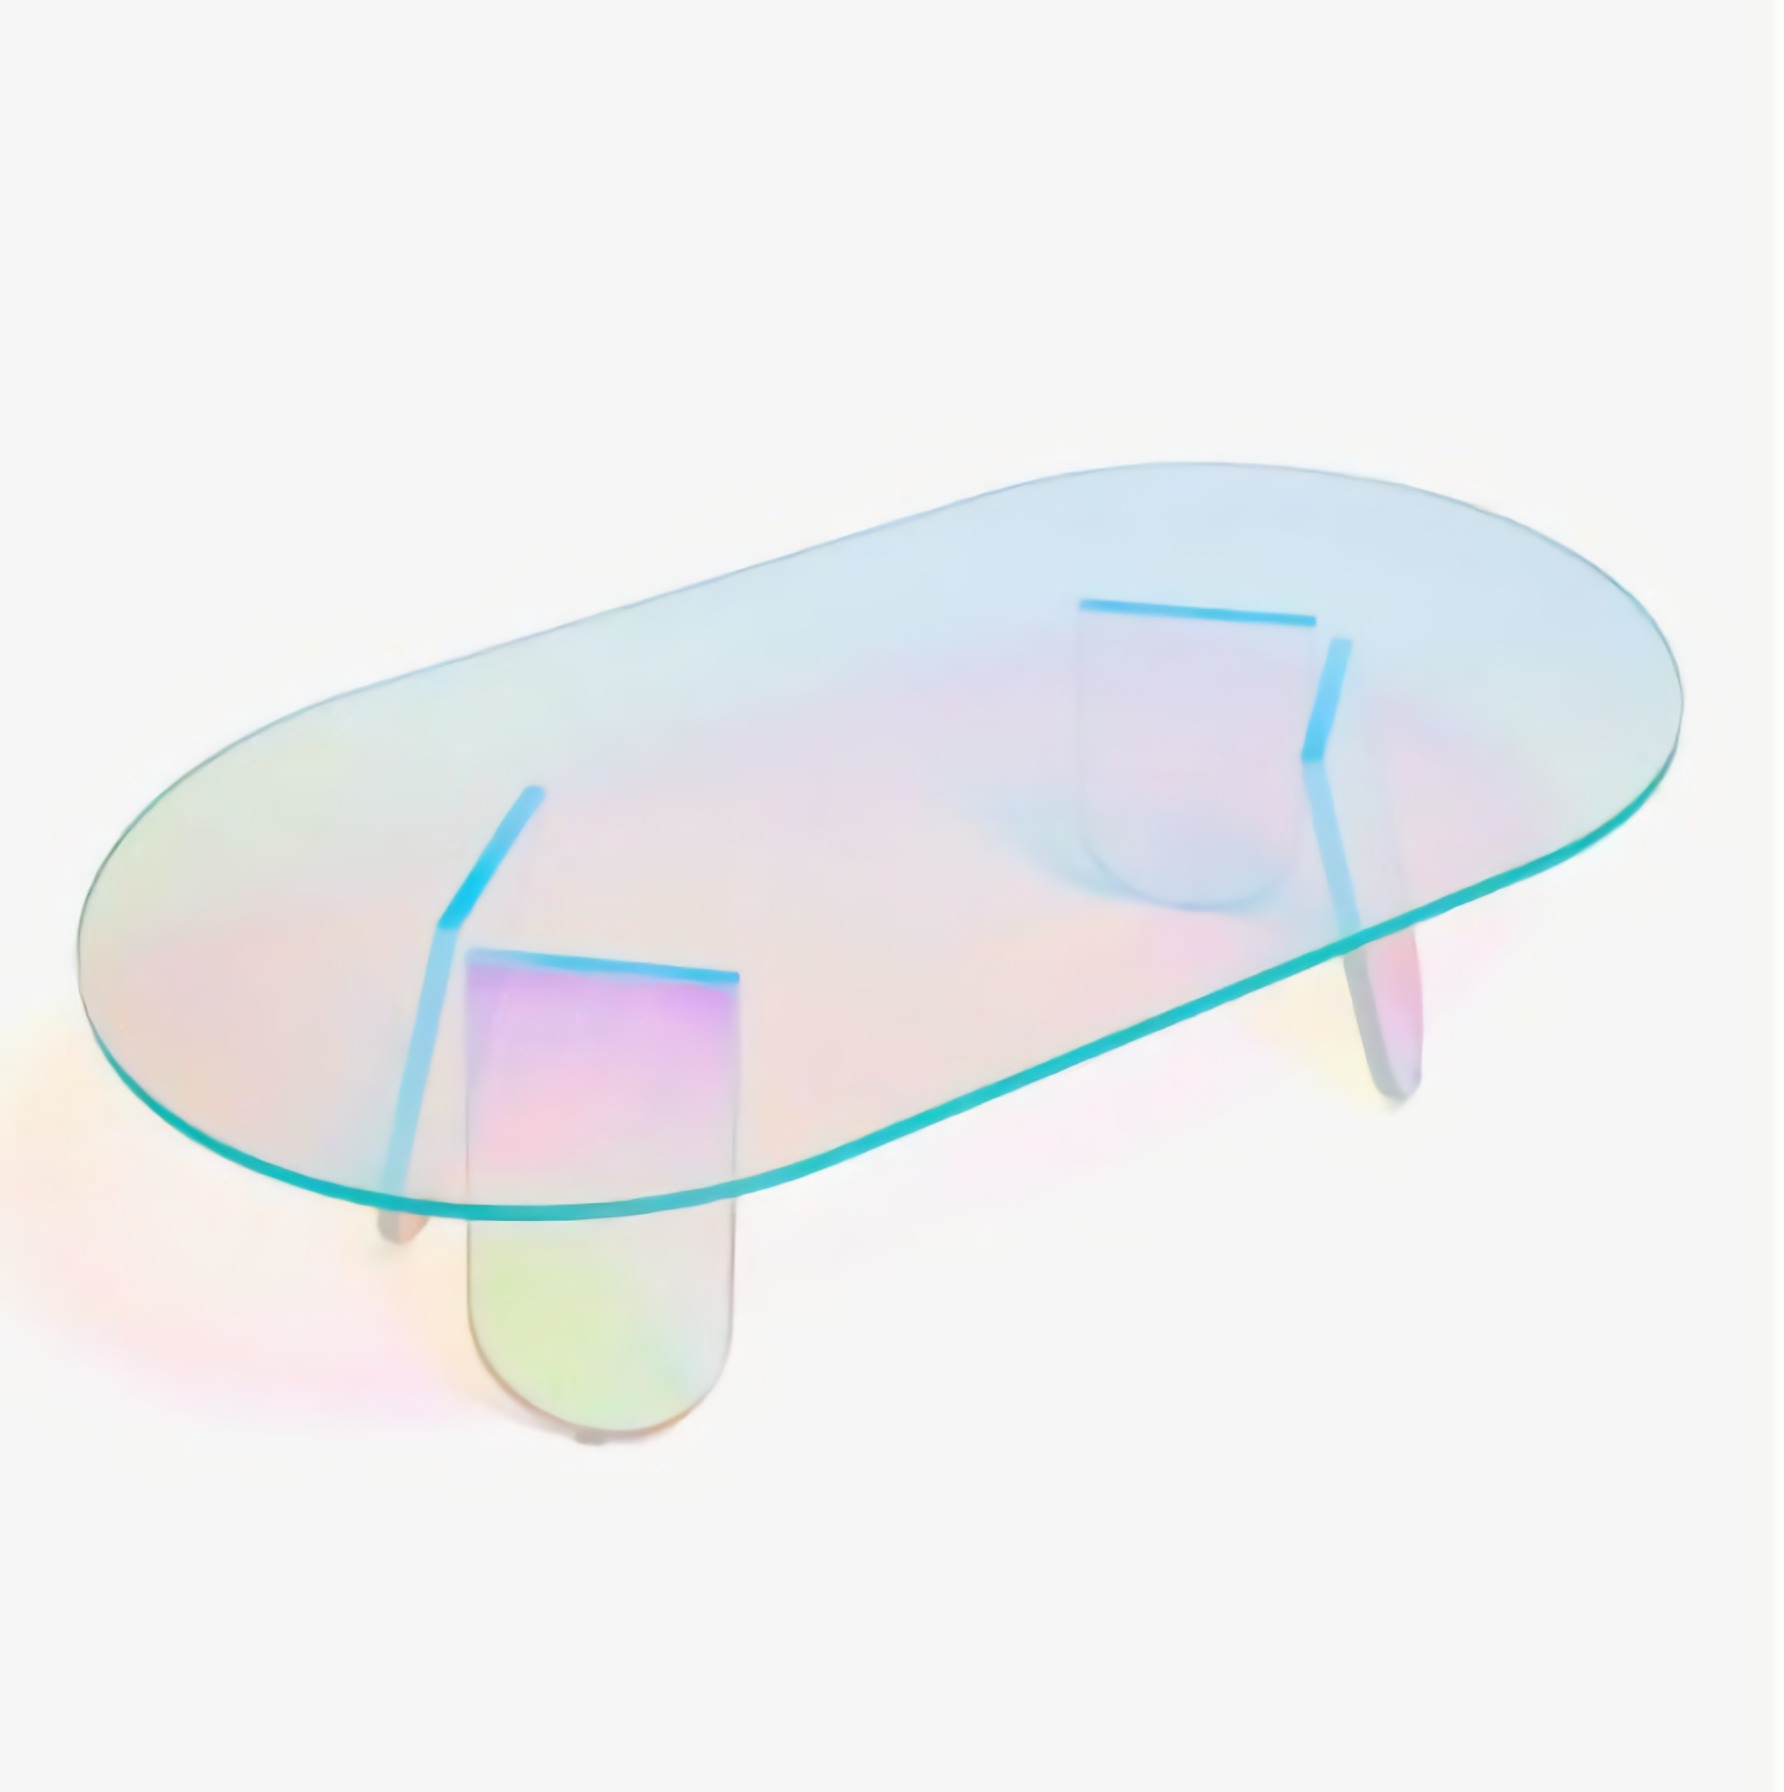 ソファテーブル ローテーブル おしゃれ ダイニングテーブル オーバル 楕円形 丸 北欧風 透明アクリルソファテーブル [送料無料 輸入品] センターテーブル